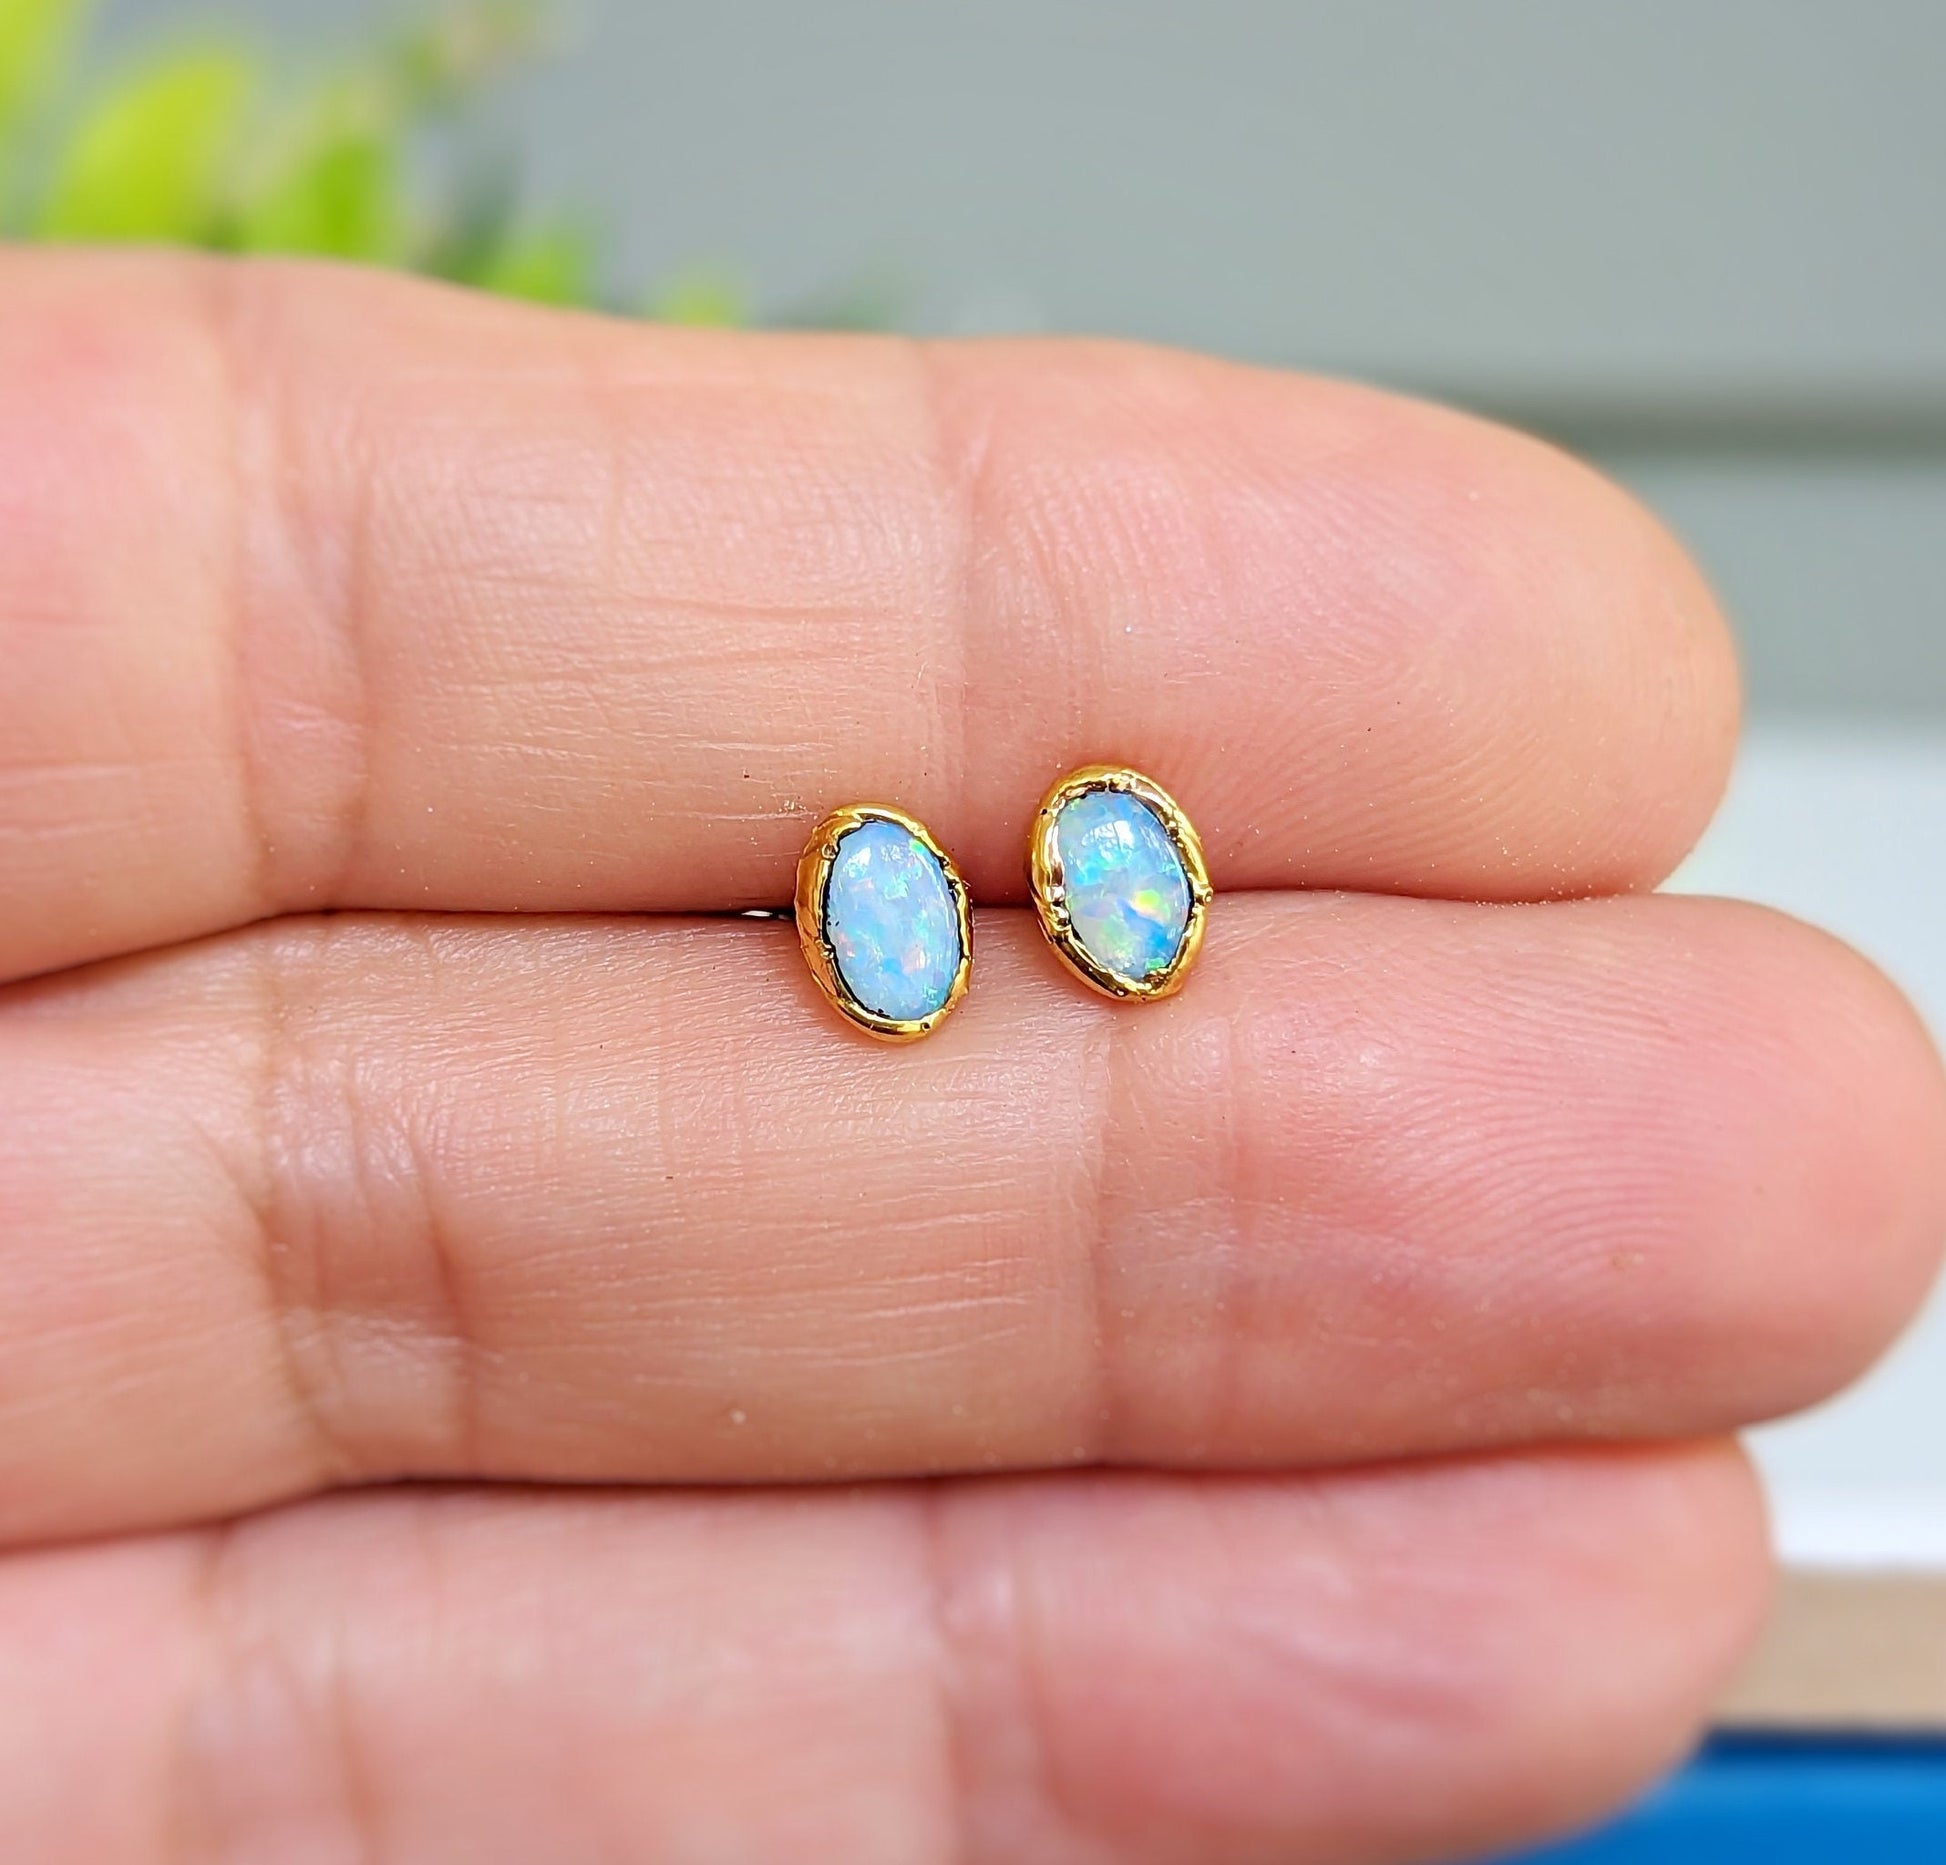 Light Blue Australian Opal stud earrings in unique 18k Gold setting